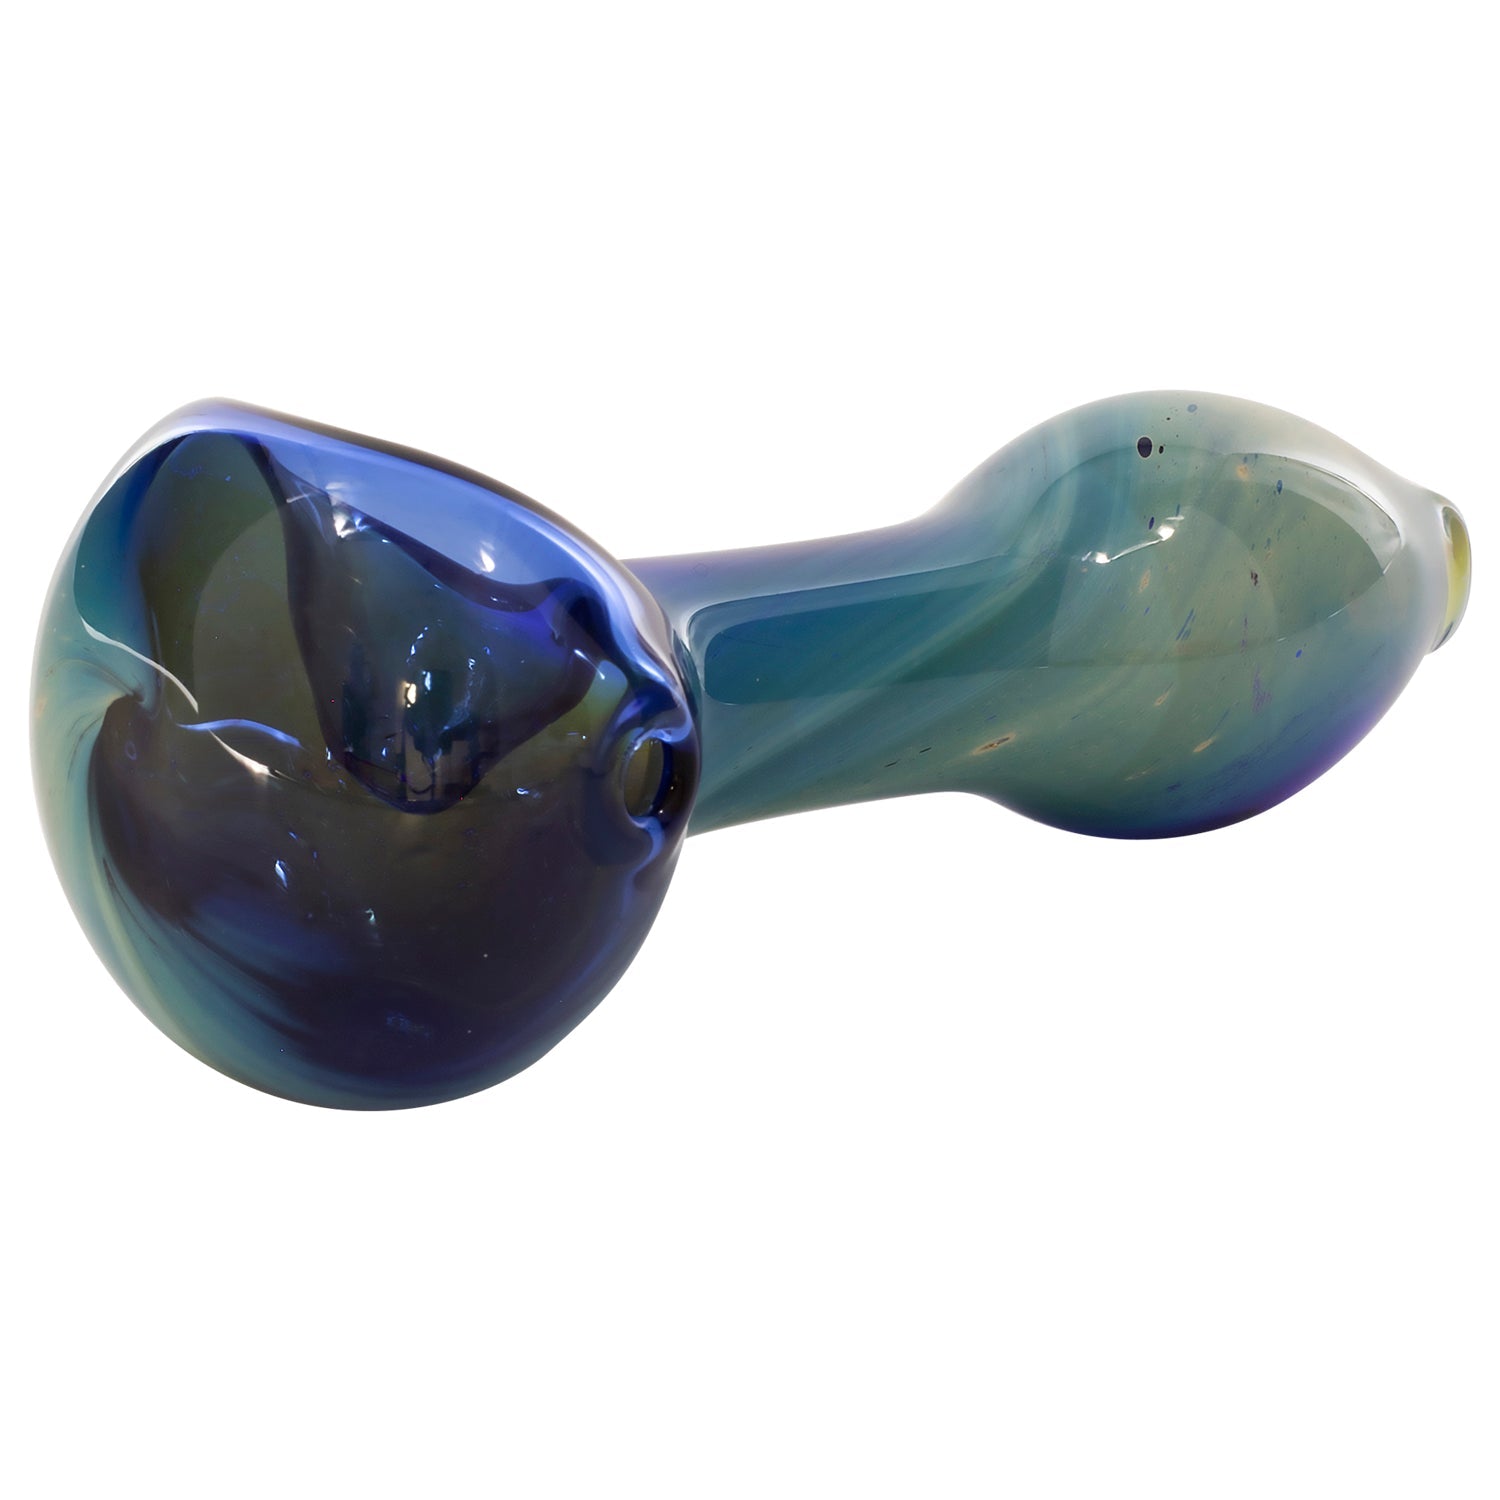 Nebula Spoon